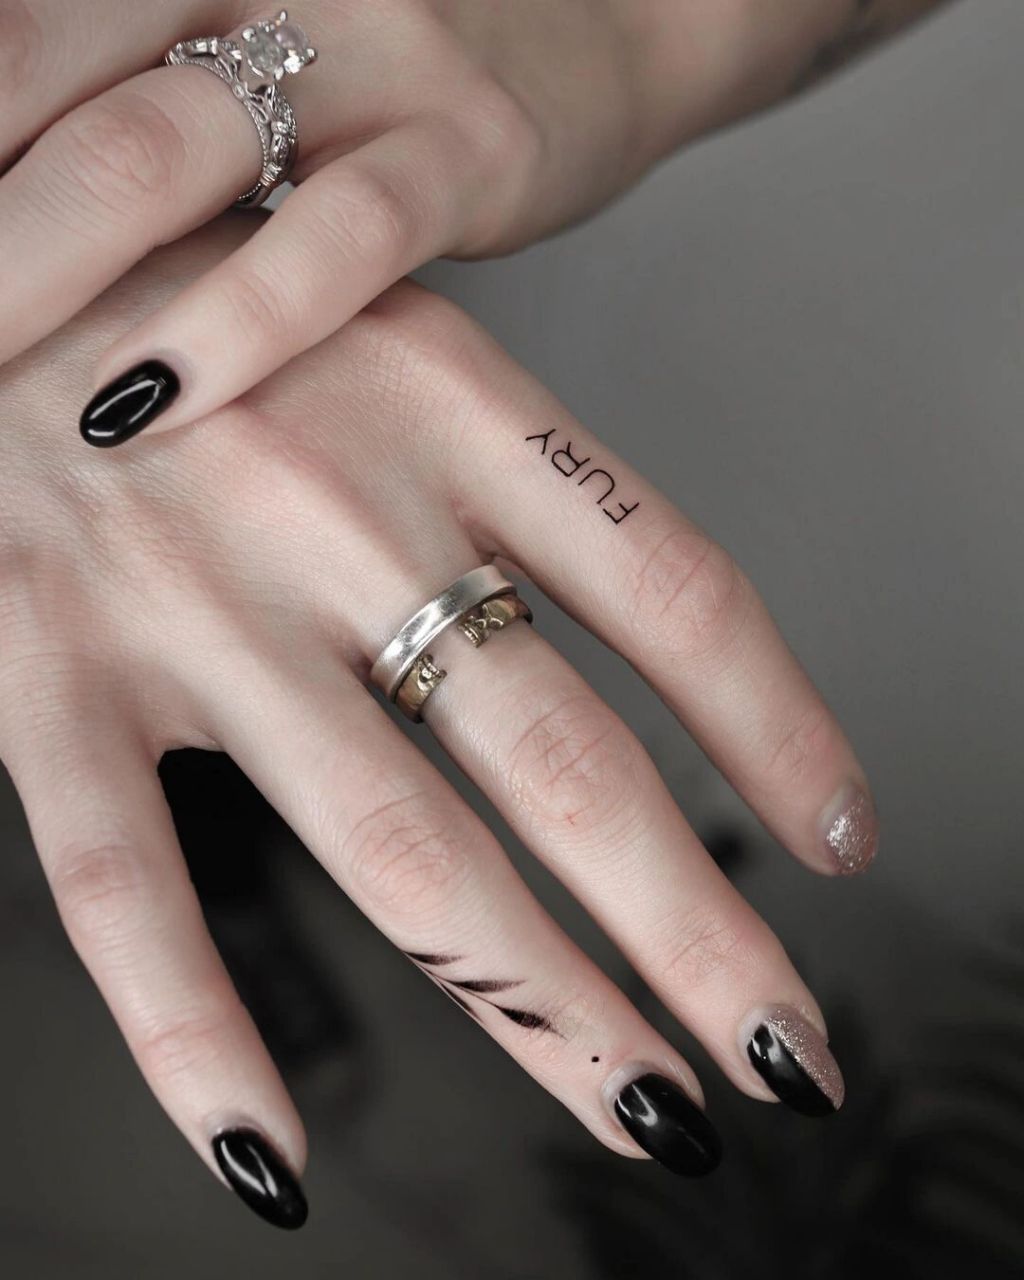 女生手指纹身霸气图片